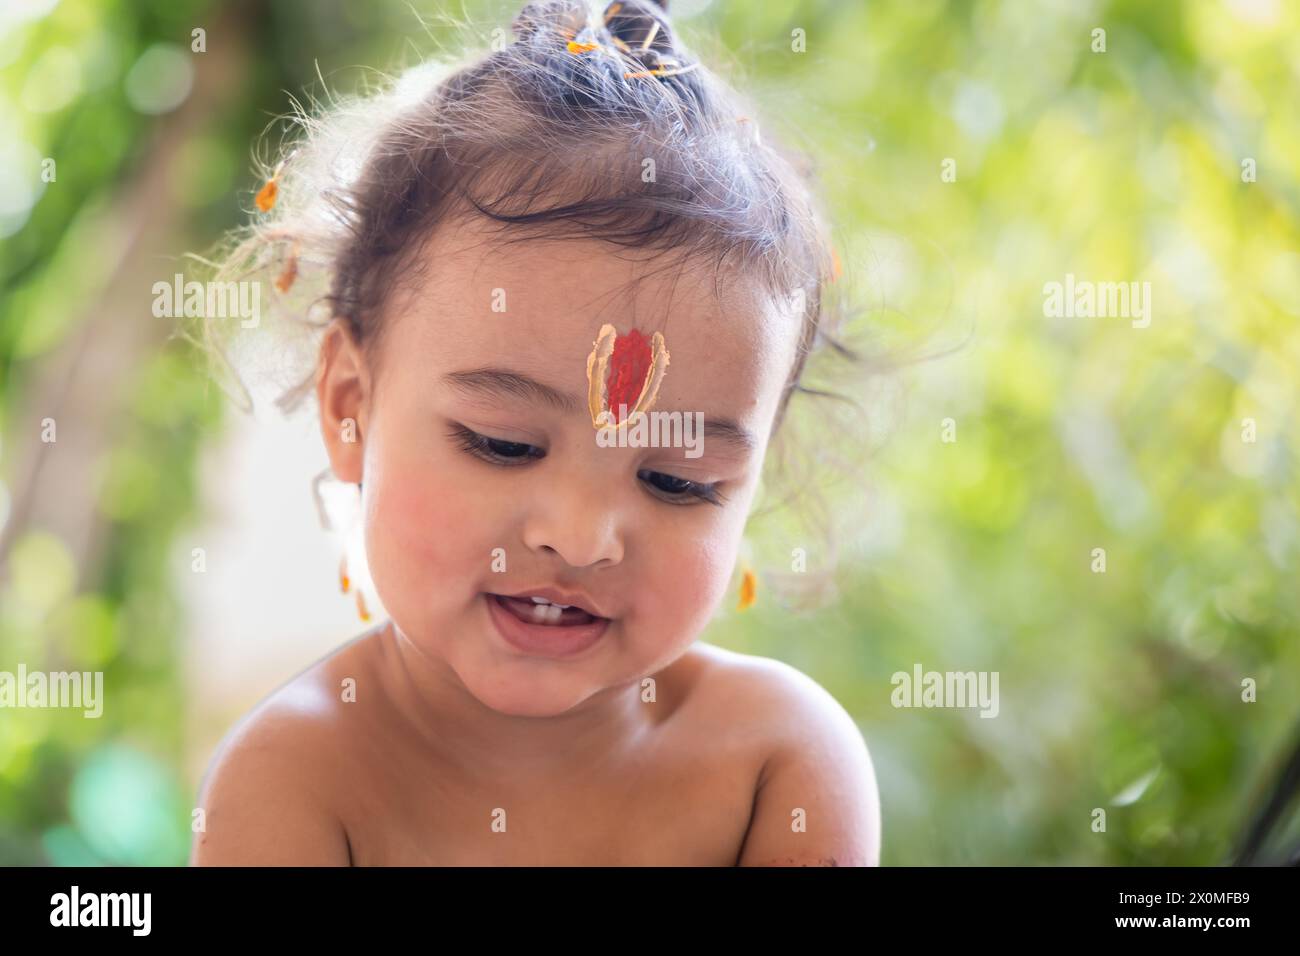 Garçon indien mignon avec symbole religieux sacré sur la tête à l'extérieur avec fond flou Banque D'Images